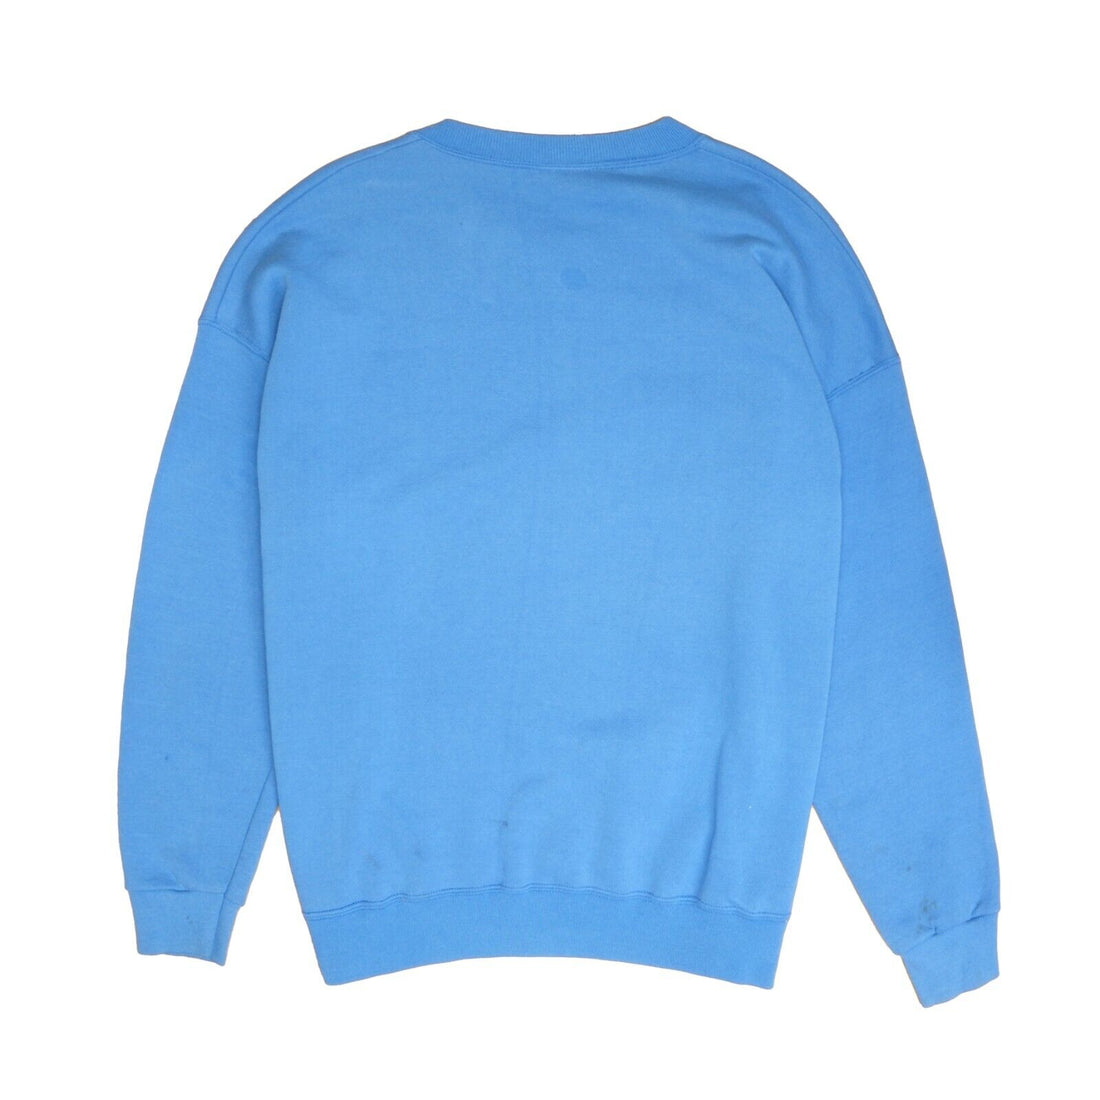 Vintage St Louis Rams Sweatshirt Crewneck Size 2XL Blue NFL